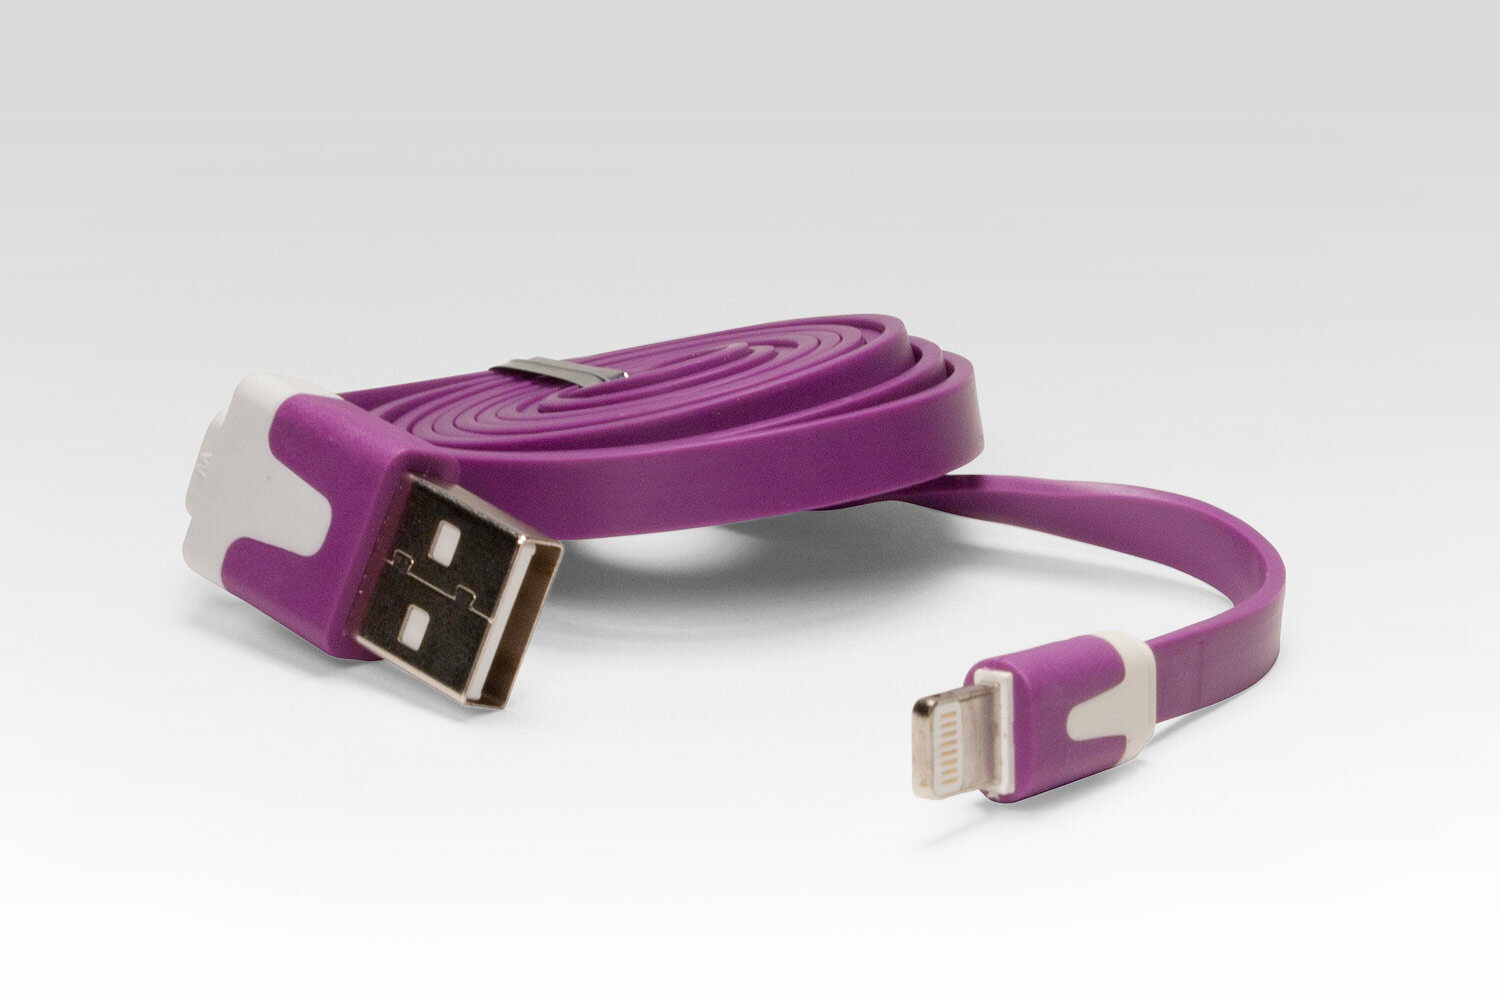 Кабель цветной Lightning для подключения к USB Apple iPhone X, iPhone 8 Plus, iPhone 7 Plus, iPhone 6 Plus, iPad. MD818ZM/A, MD8